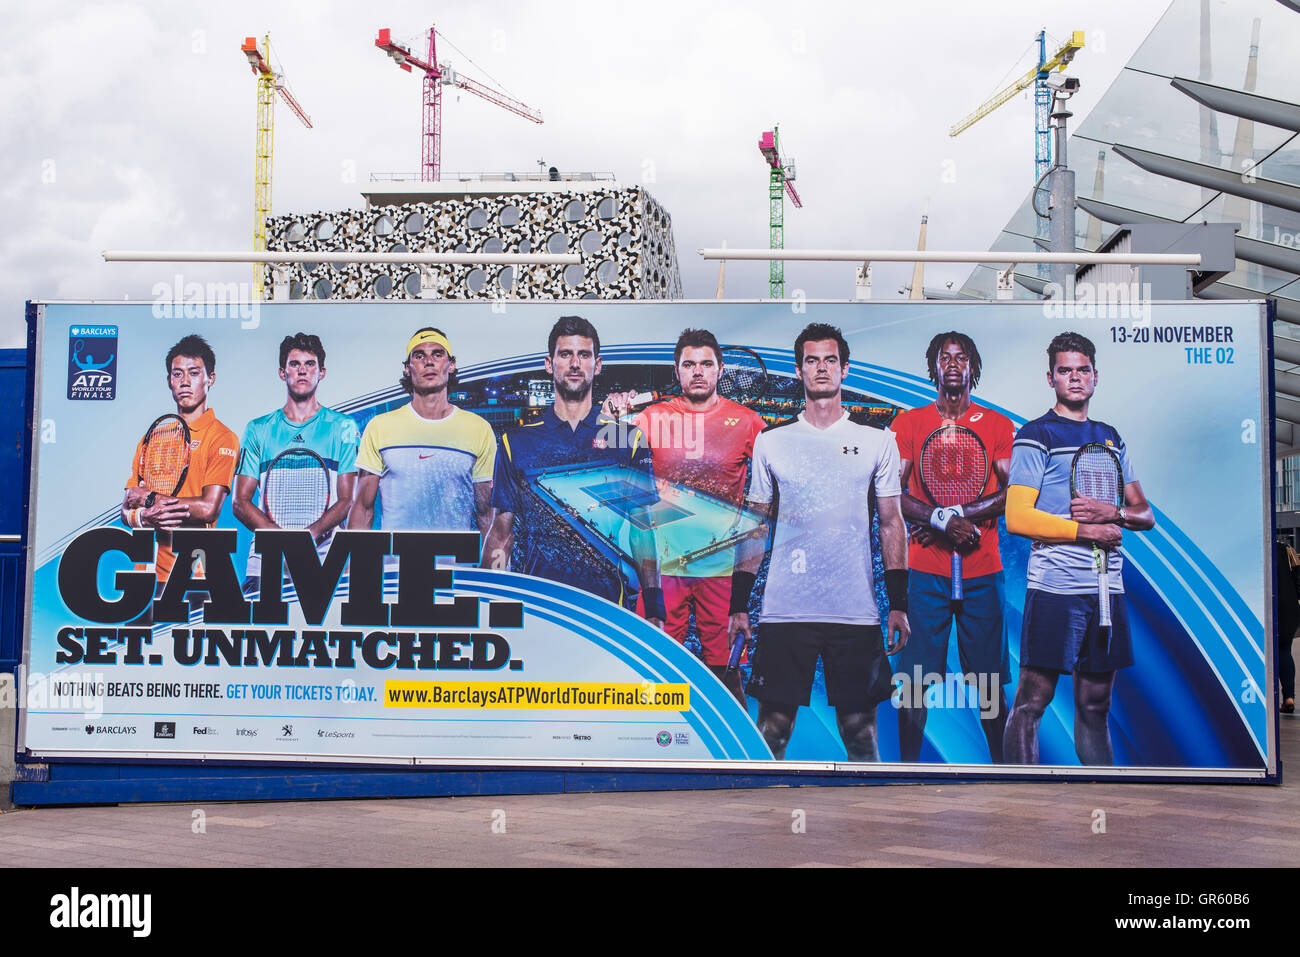 Tabellone gigante promuovendo la barclays ATP World Tour Finals 2016 che si terrà a Londra 13-20 Novembre 2016. Foto Stock